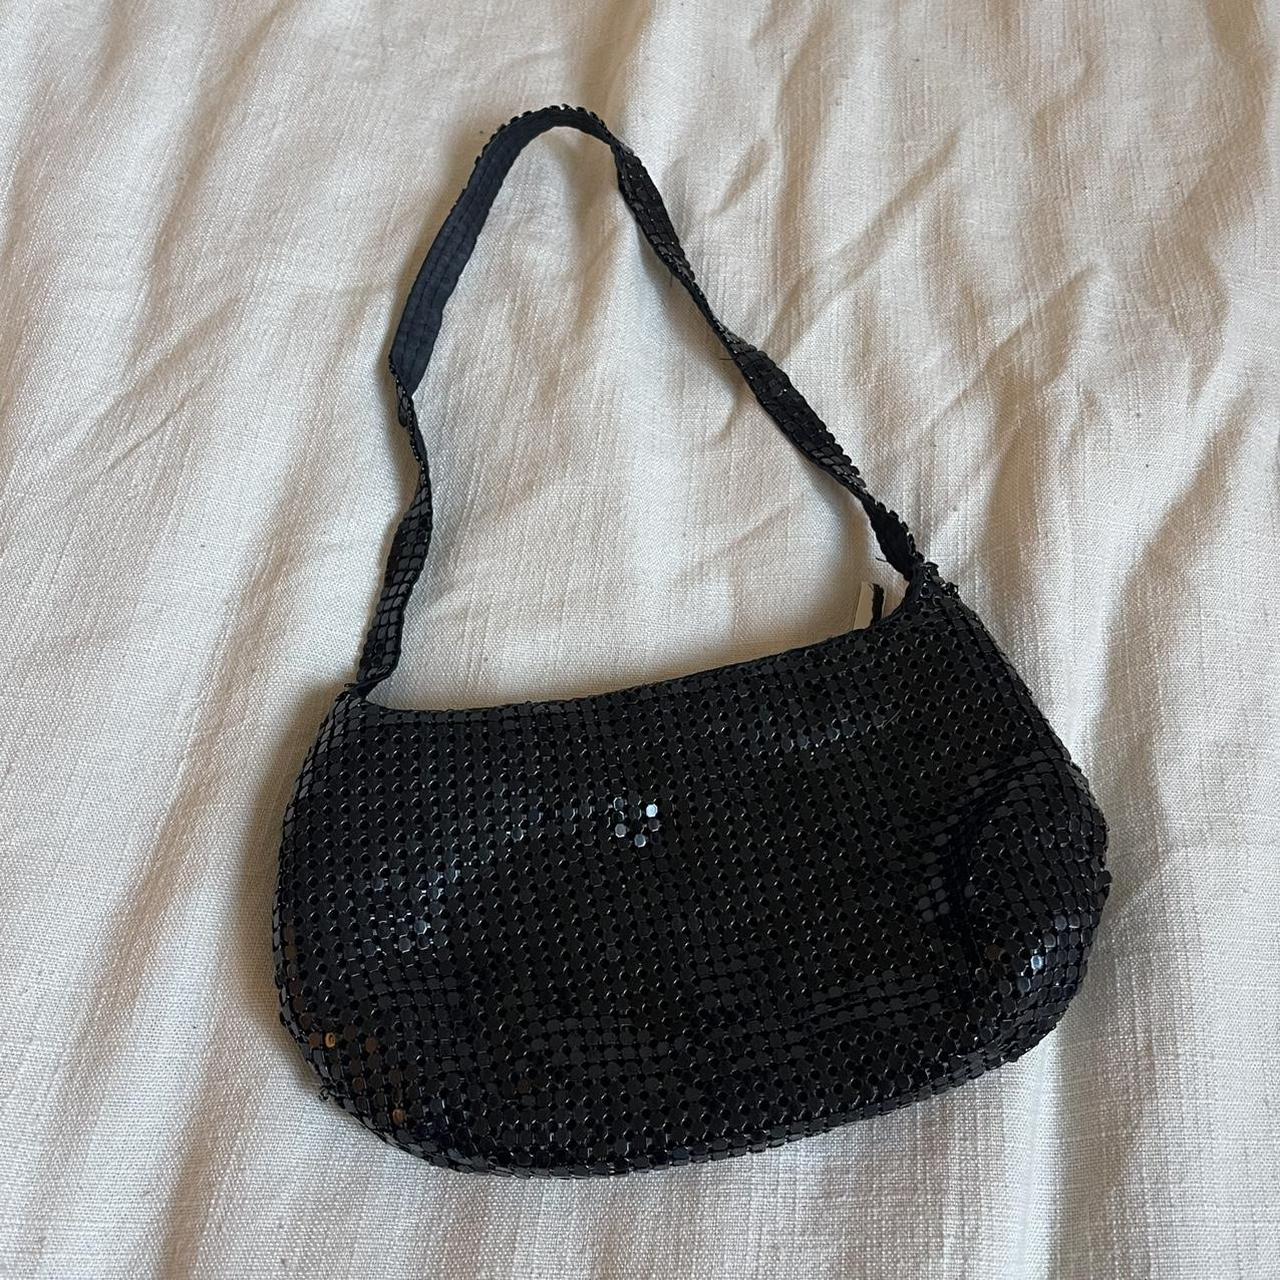 Sequin Clutch Bag Made in Italy Noir , Vanessa Bruno